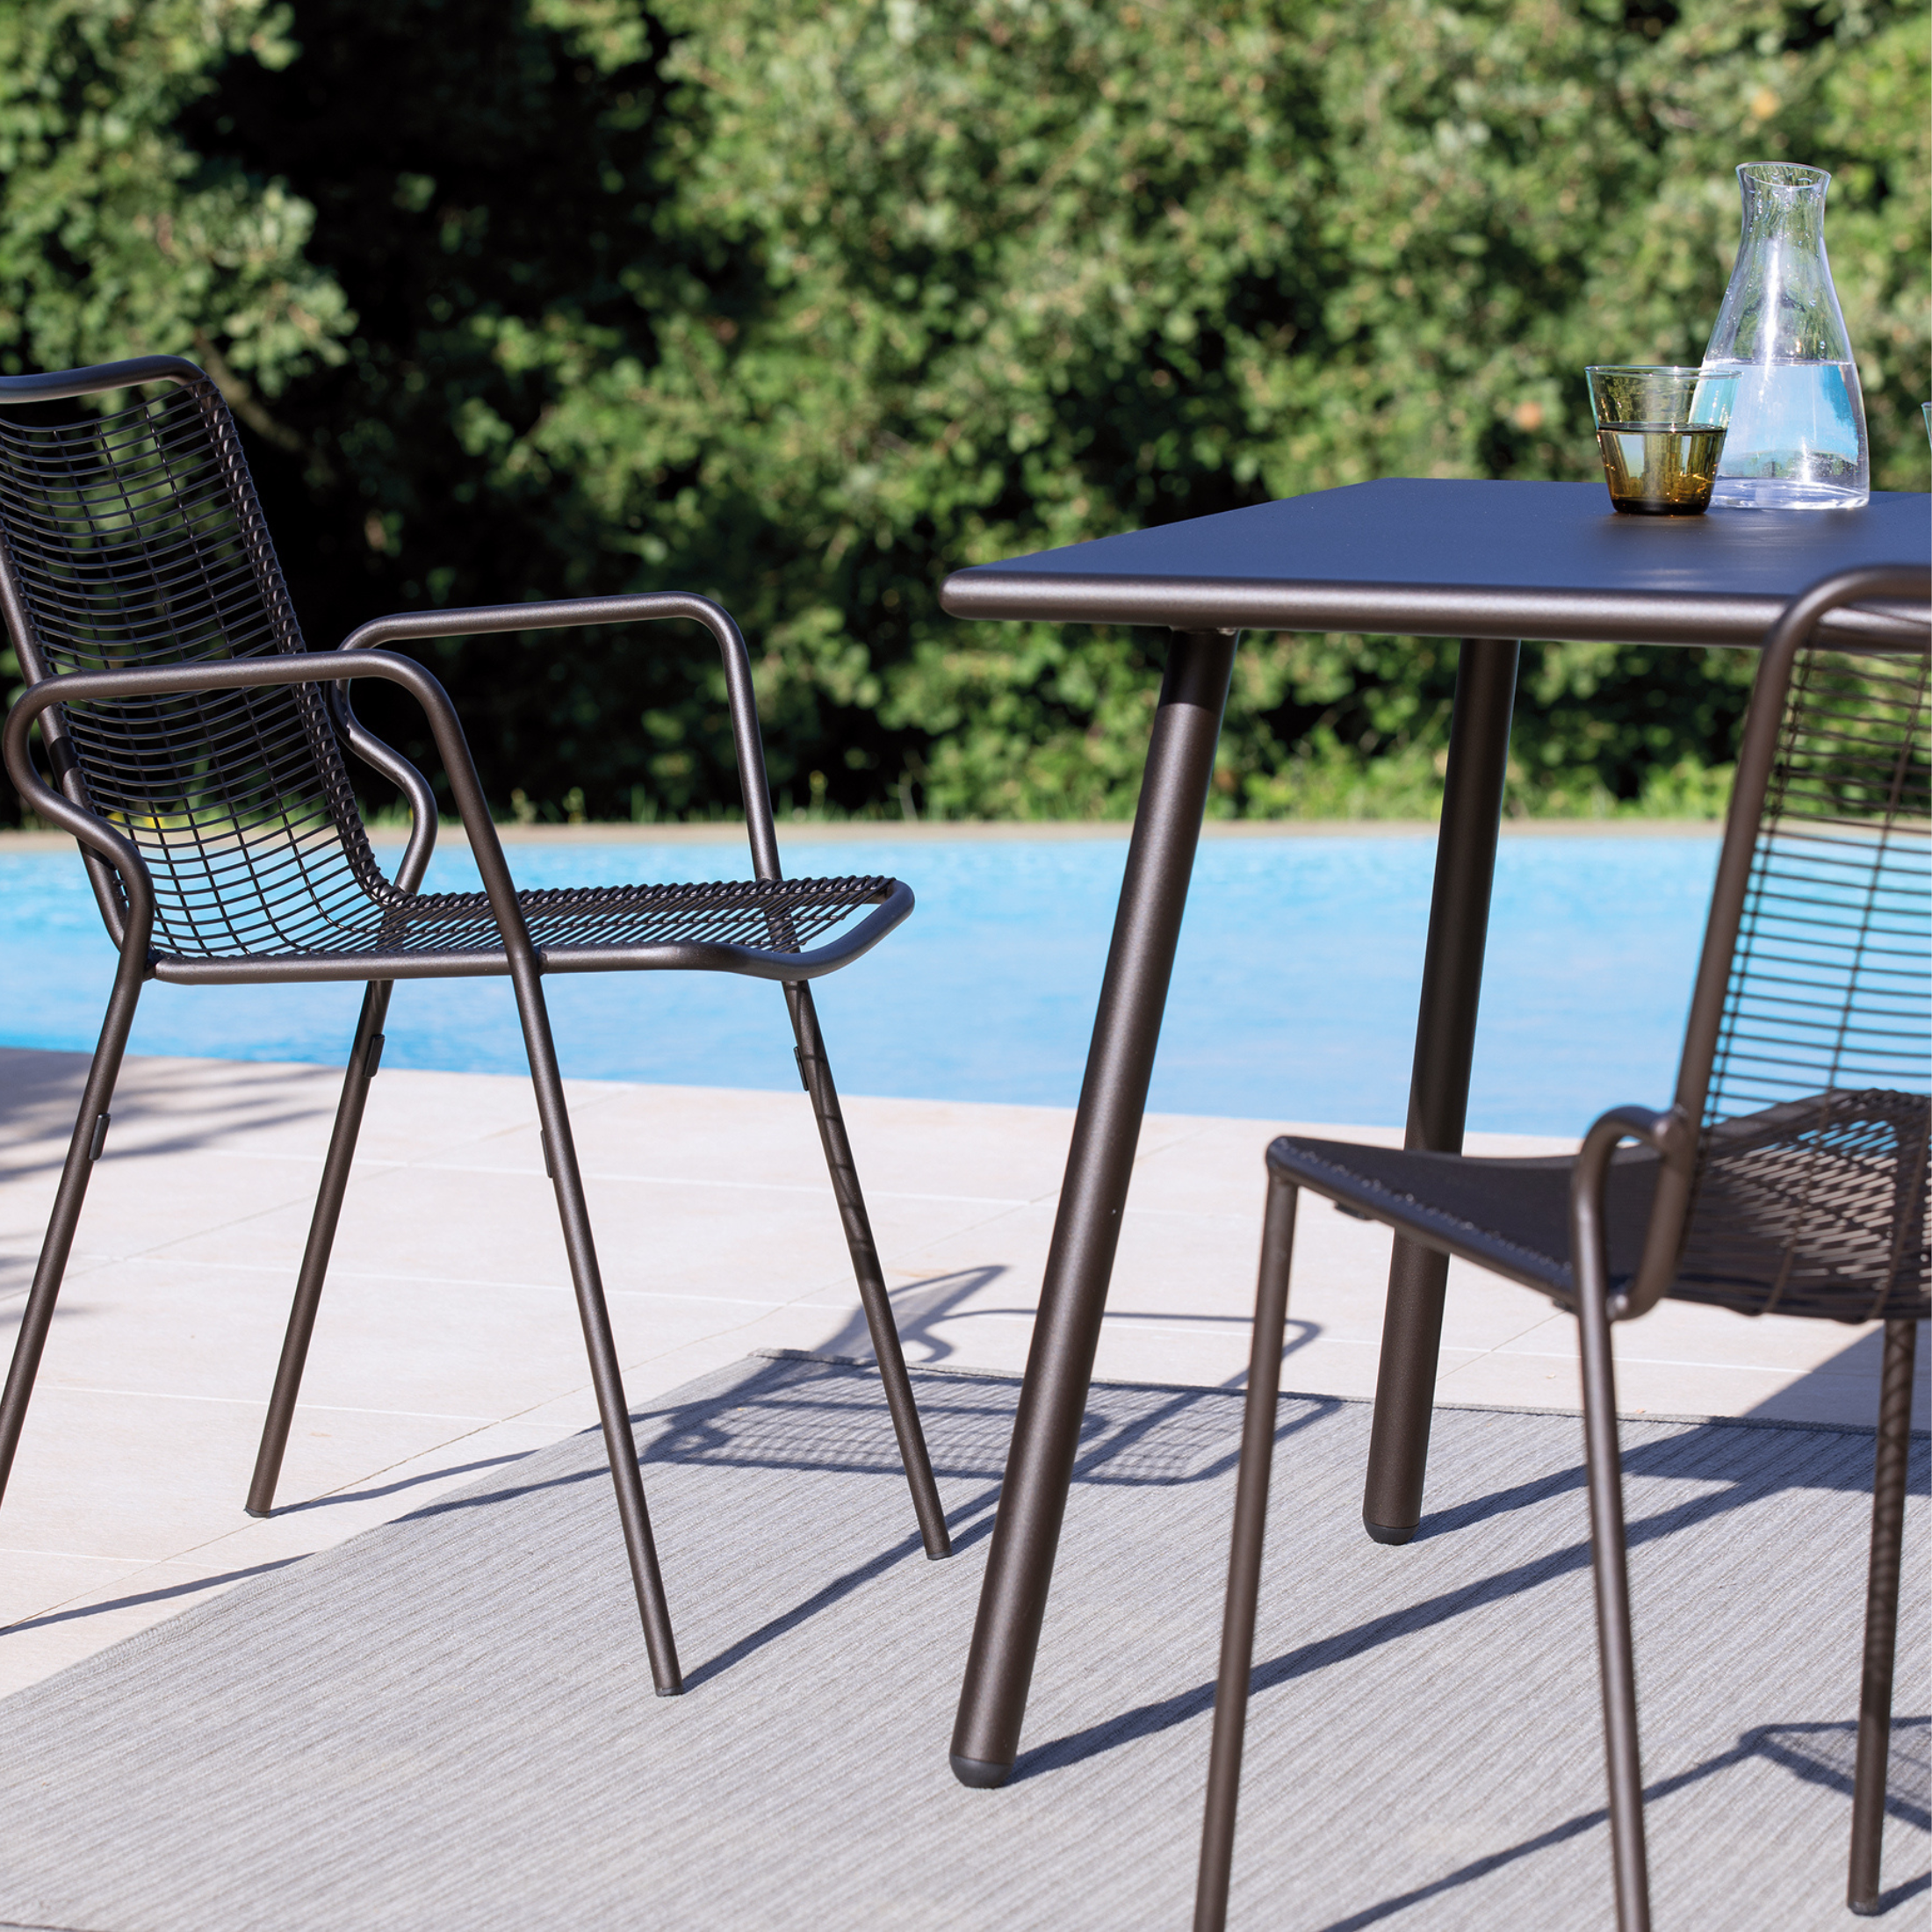 Table fixe "Roma1" en métal peint pour jardin moderne